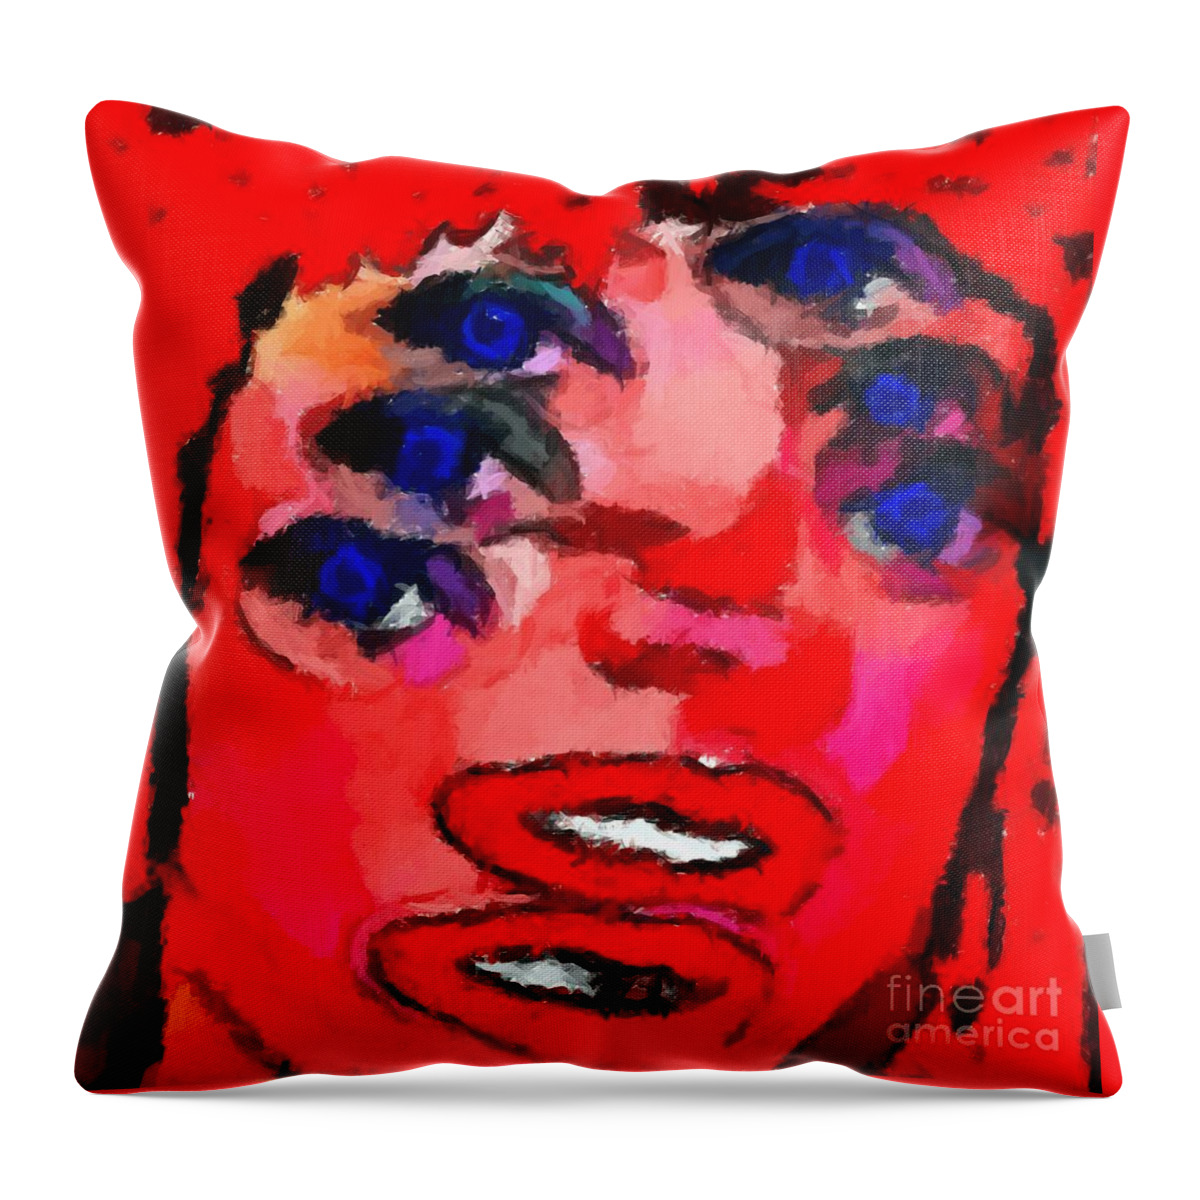 Weird Throw Pillow featuring the digital art Weird 1 by Chris Butler